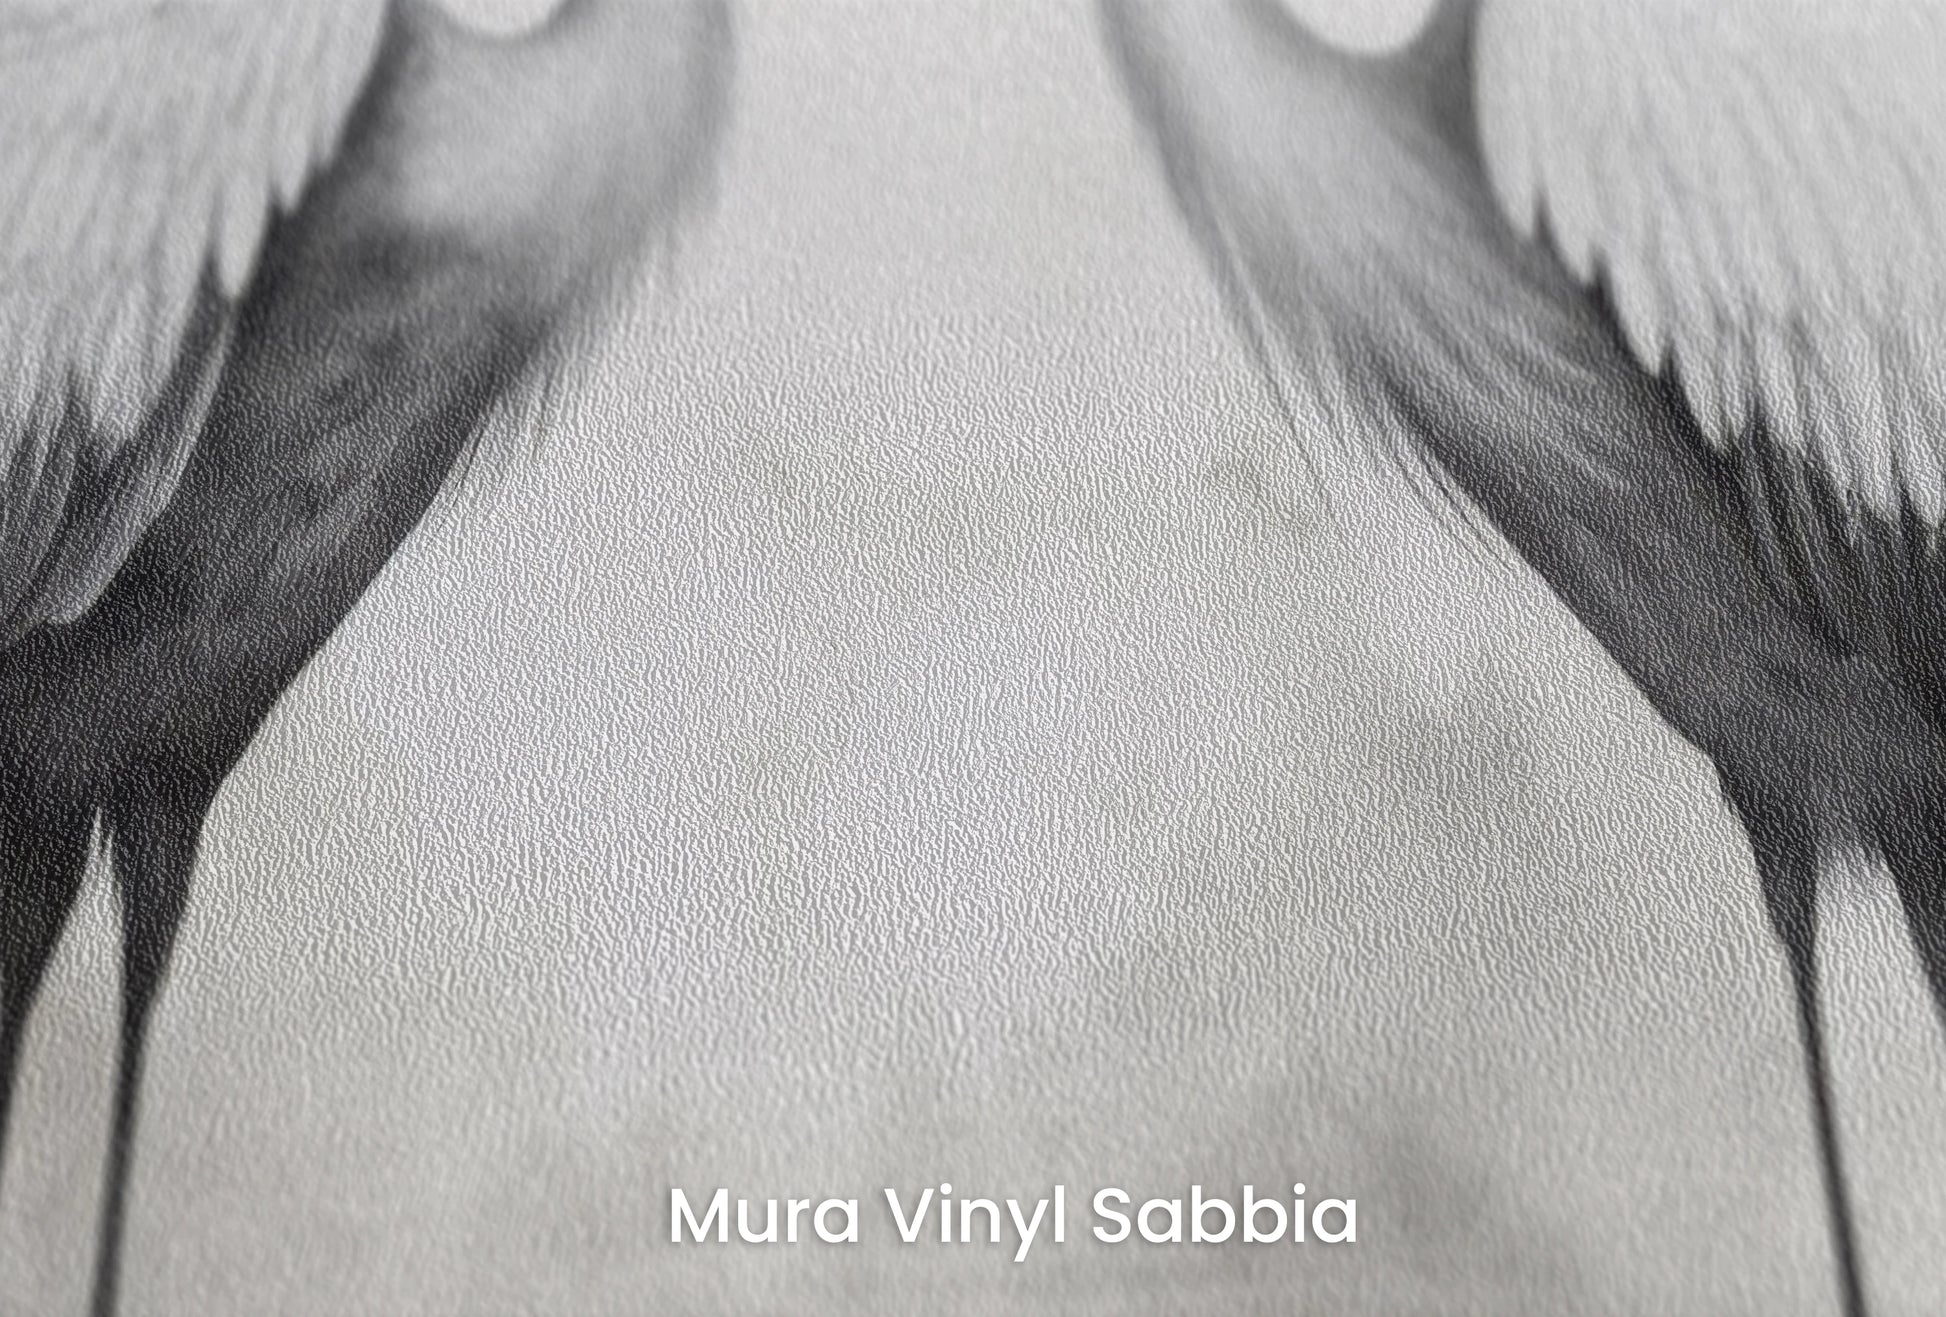 Zbliżenie na artystyczną fototapetę o nazwie Monochrome Elegance #3 na podłożu Mura Vinyl Sabbia struktura grubego ziarna piasku.